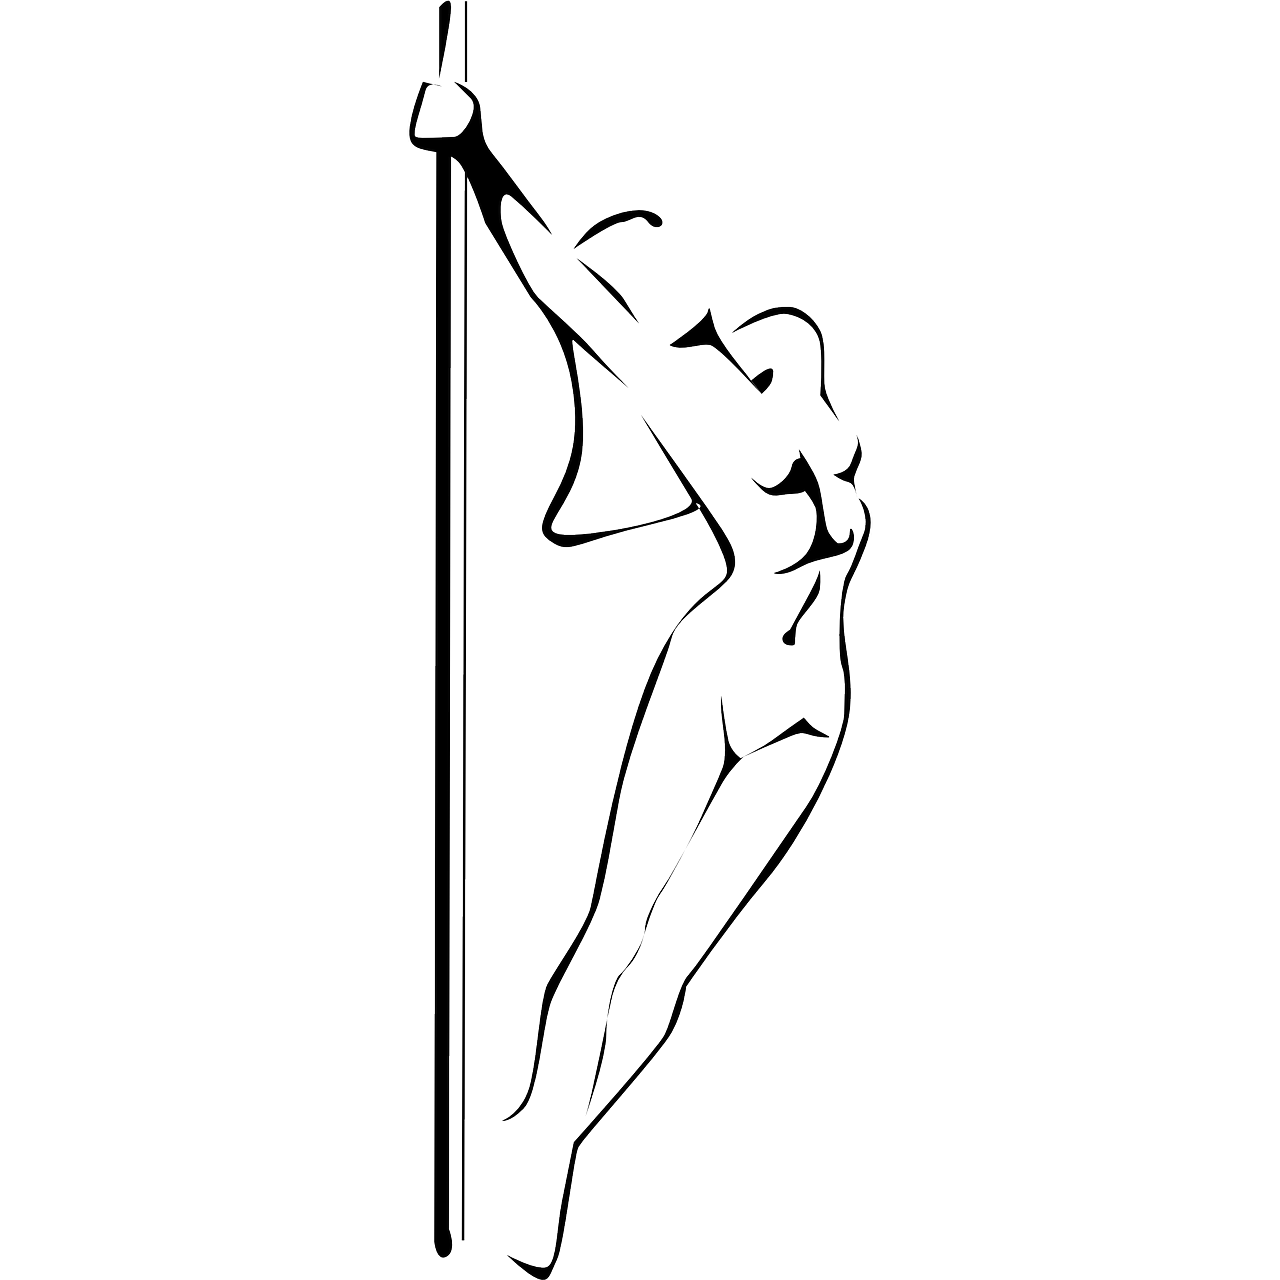 Karin's Pole Dance in Nürnberg - Logo